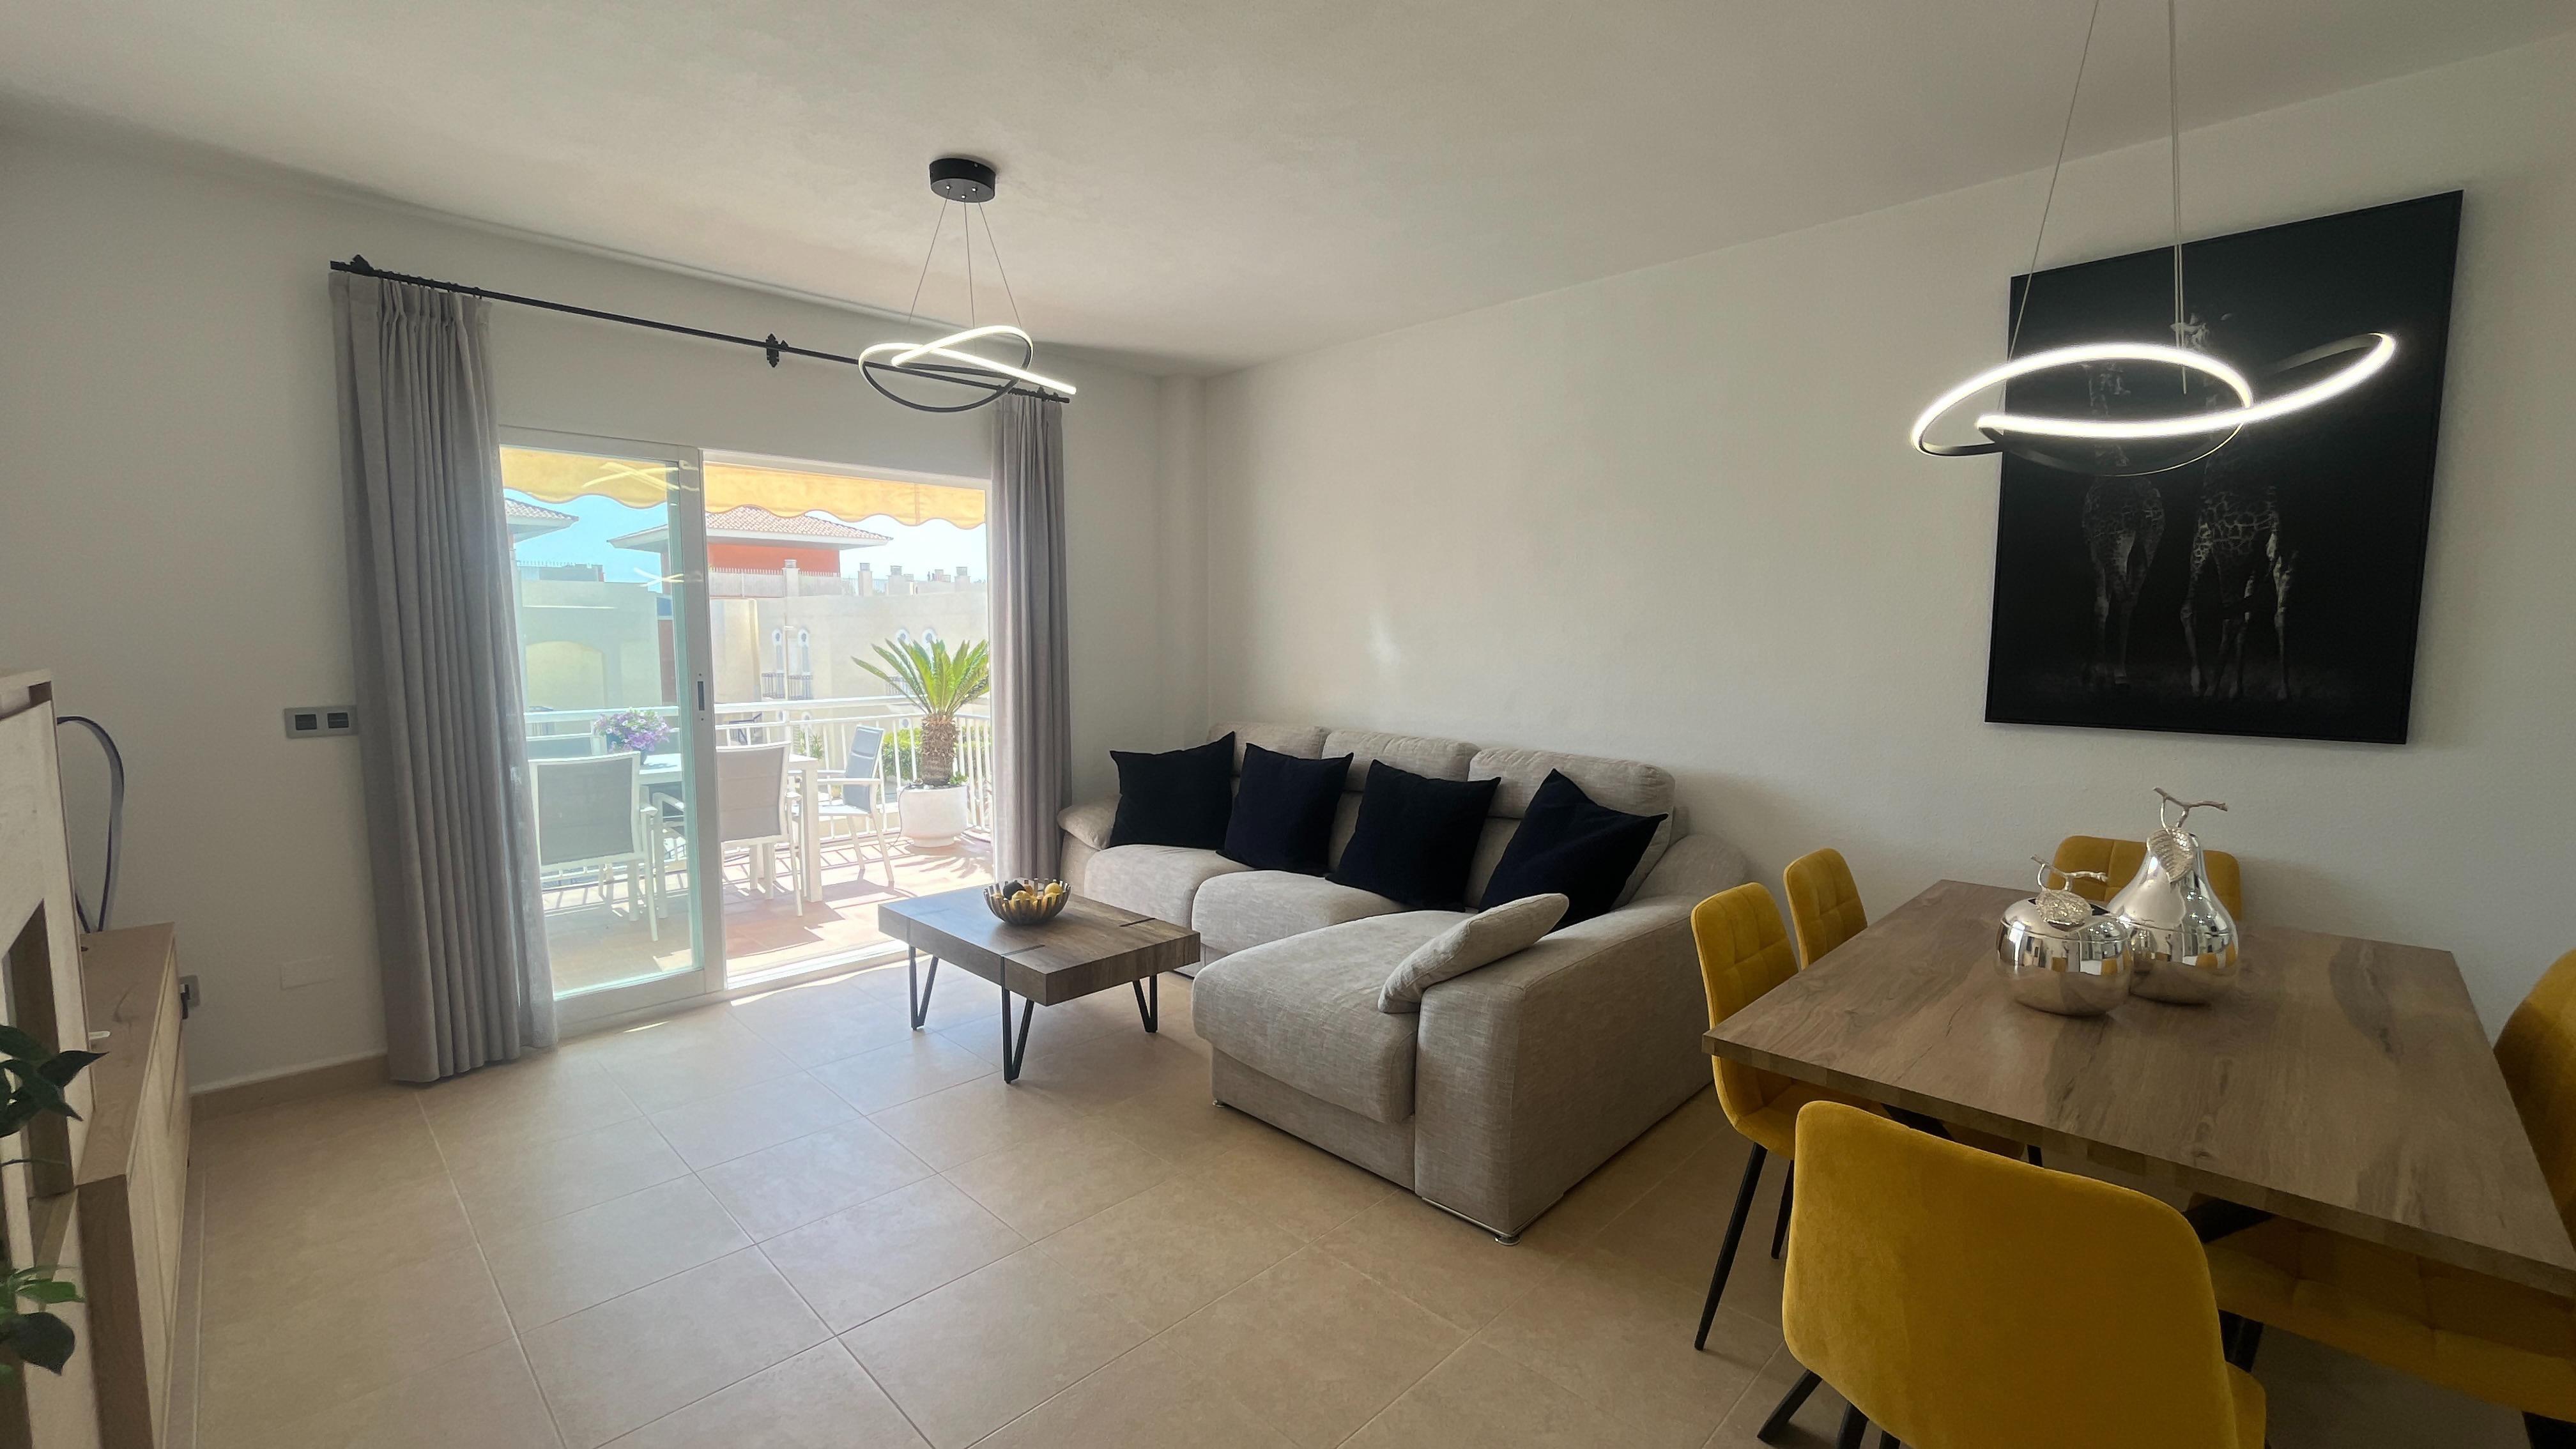 Apartamento de 3 cuartos, cercano al campo de golf: Apartamento en alquiler en Mojácar, Almería